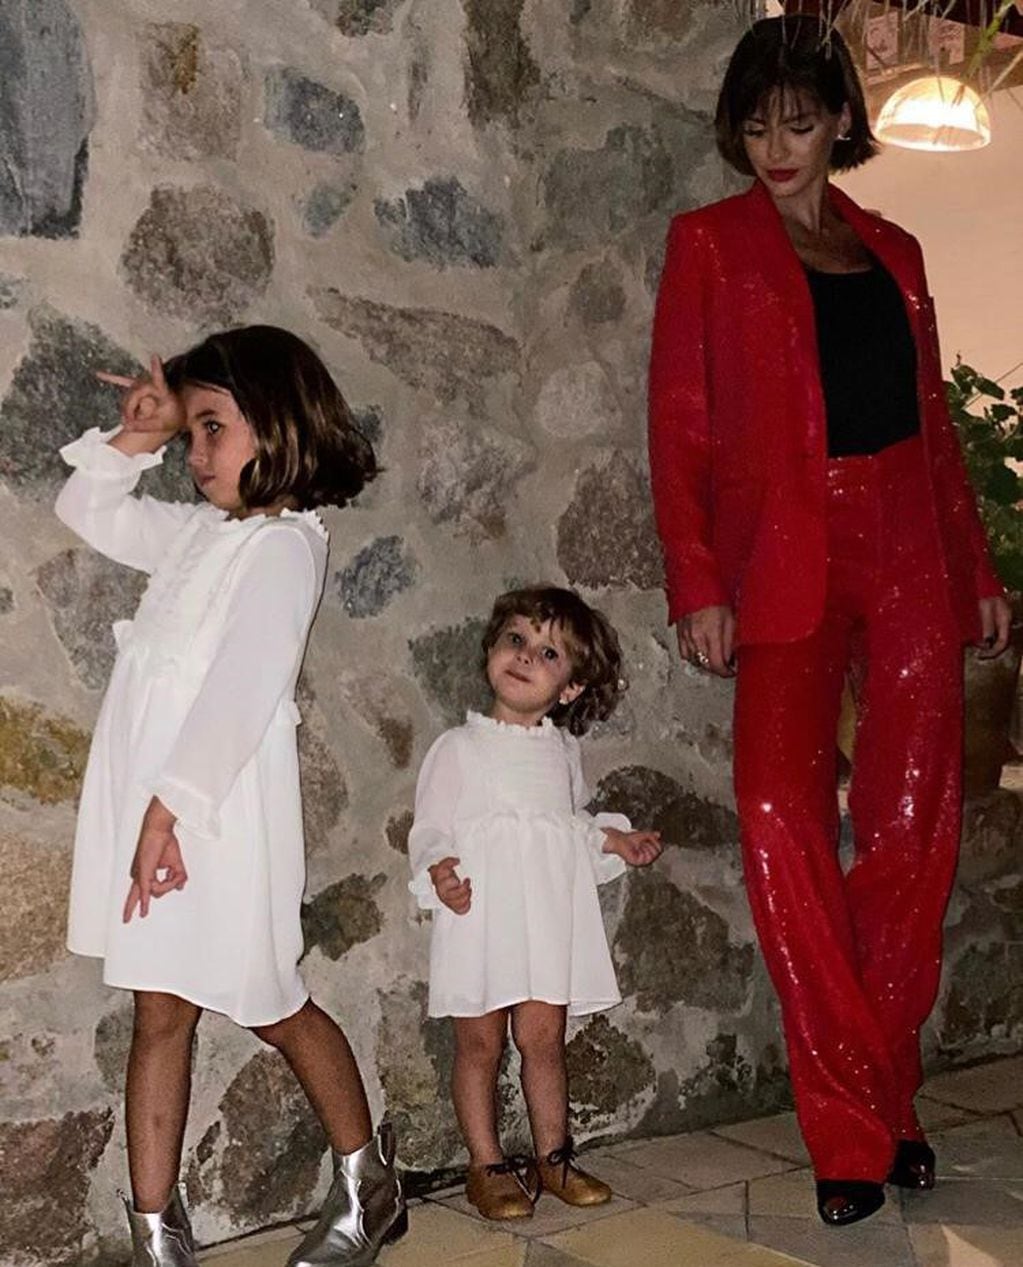 La China Suárez compartió una imagen con sus hijas en el festejo de Año Nuevo.